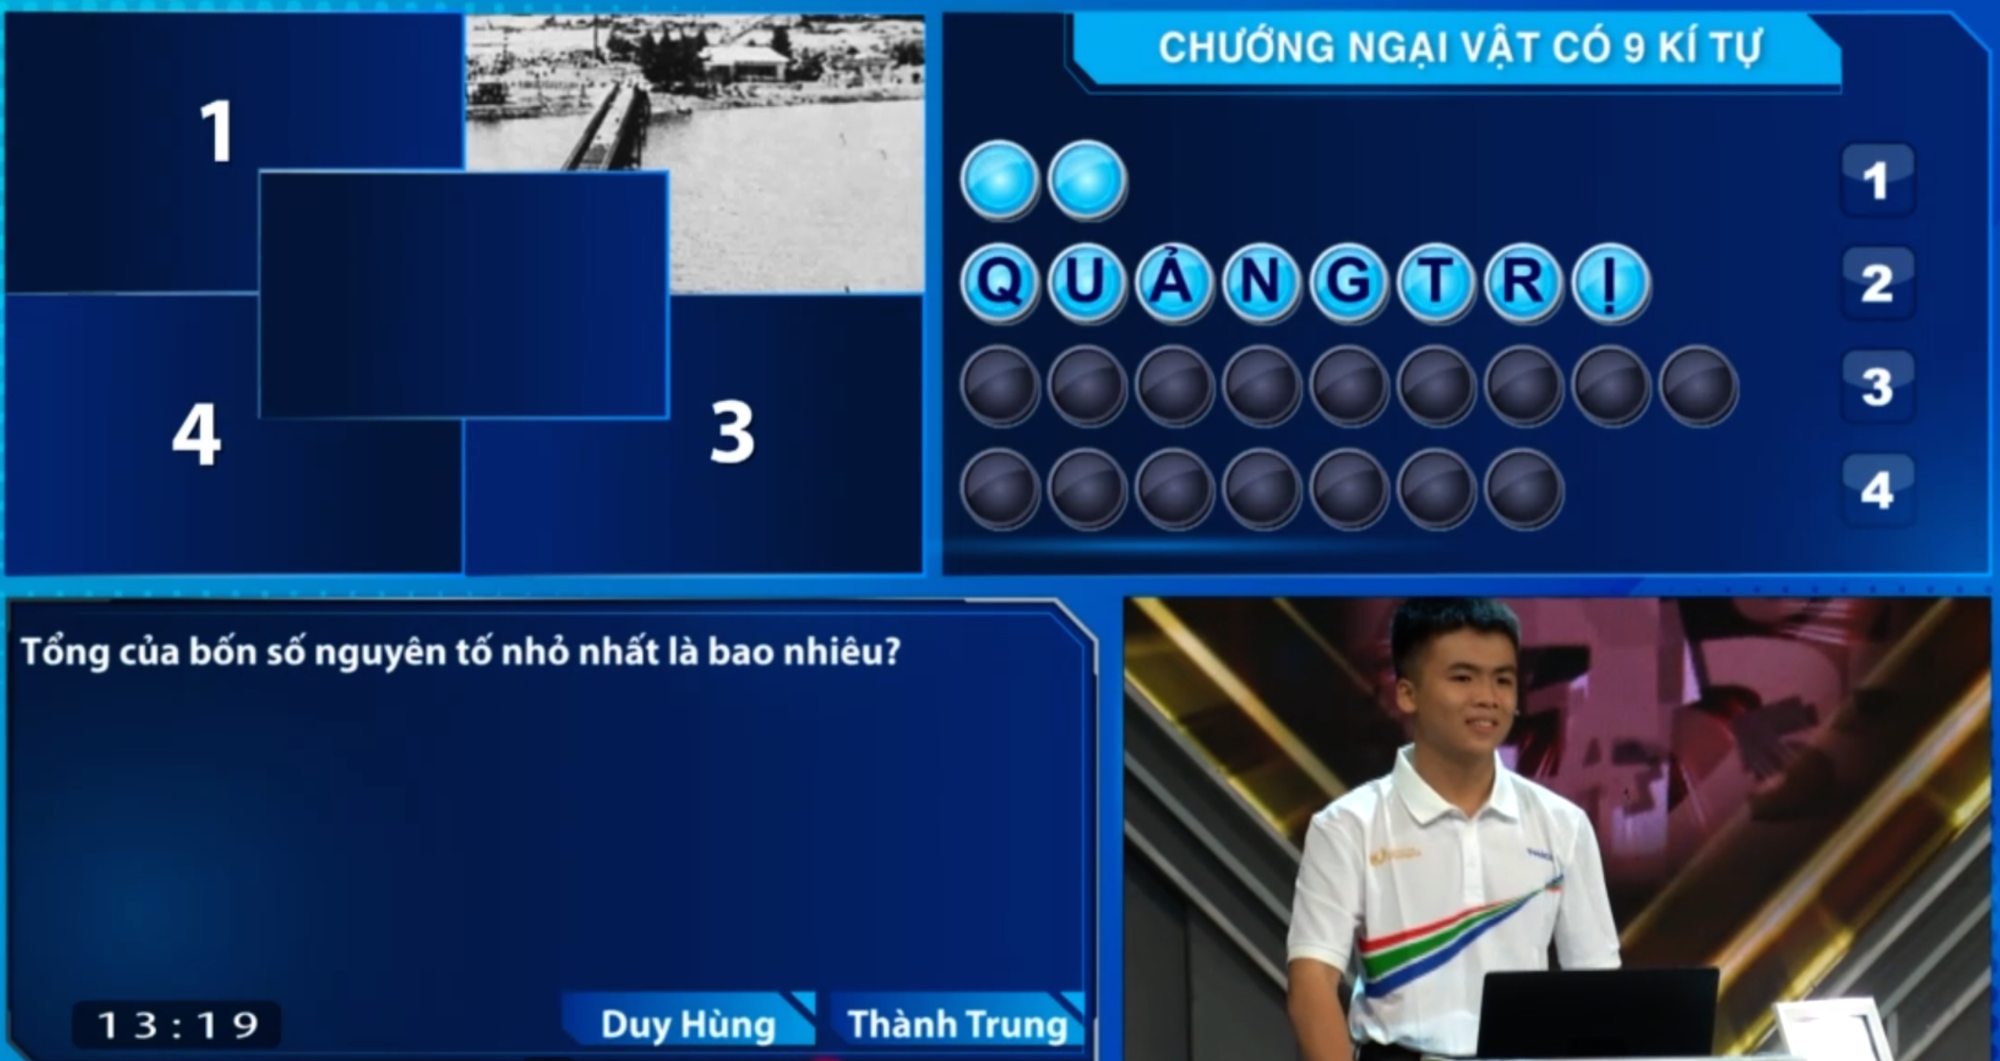 10x Hà Nội giành vòng nguyệt quế Olympia nhờ chiến thuật 'đúng trước, nhanh sau' - Ảnh 2.